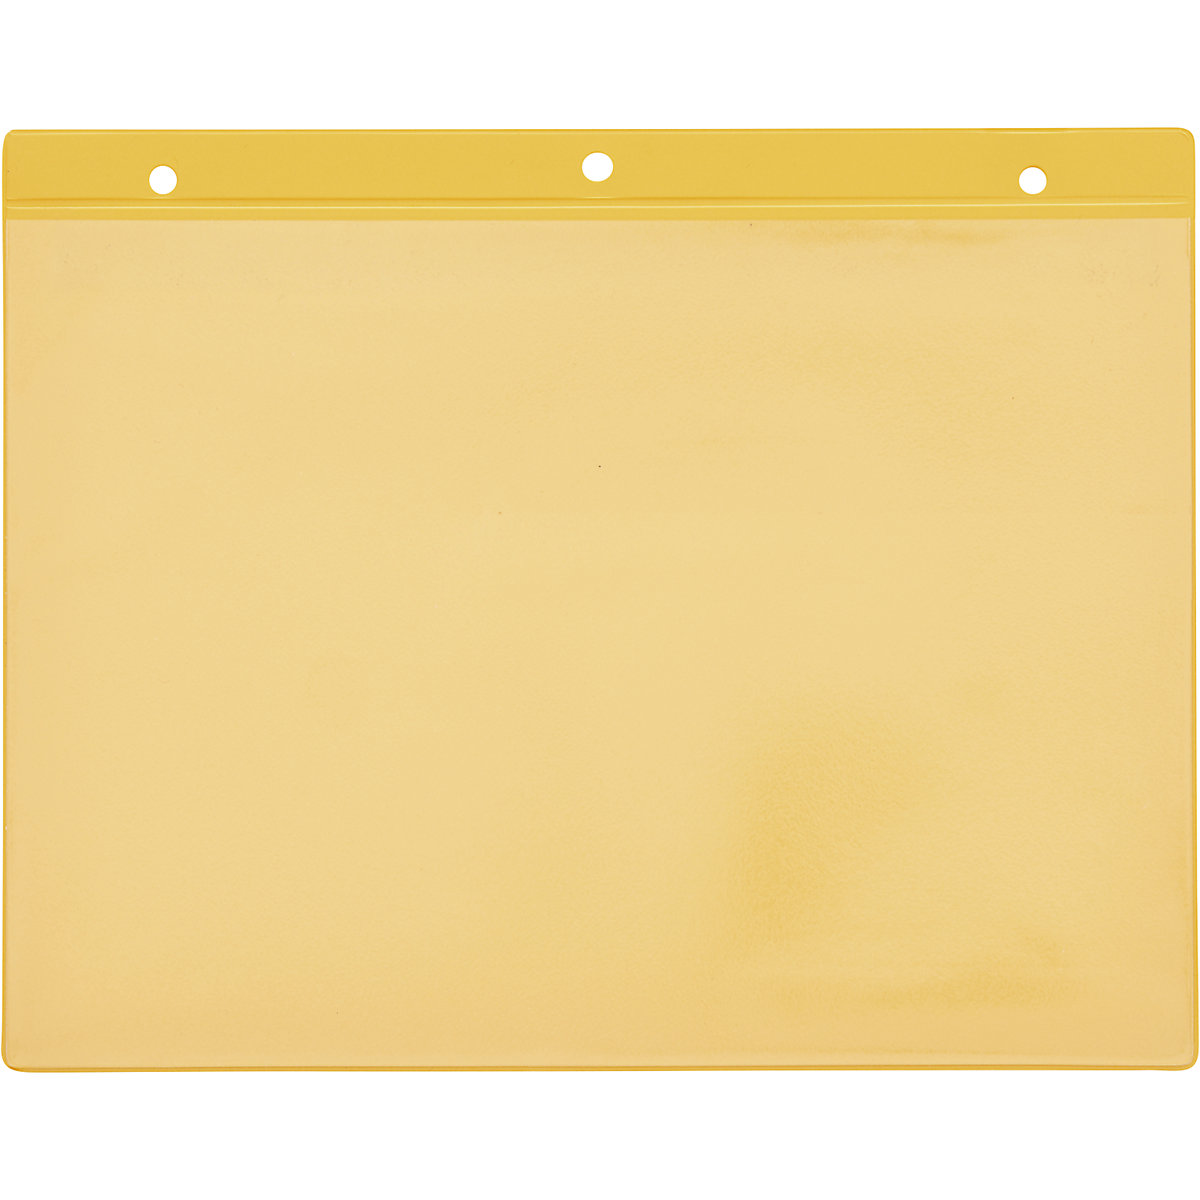 Porte-documents avec trous d'accrochage, format horizontal A4, jaune, lot de 50